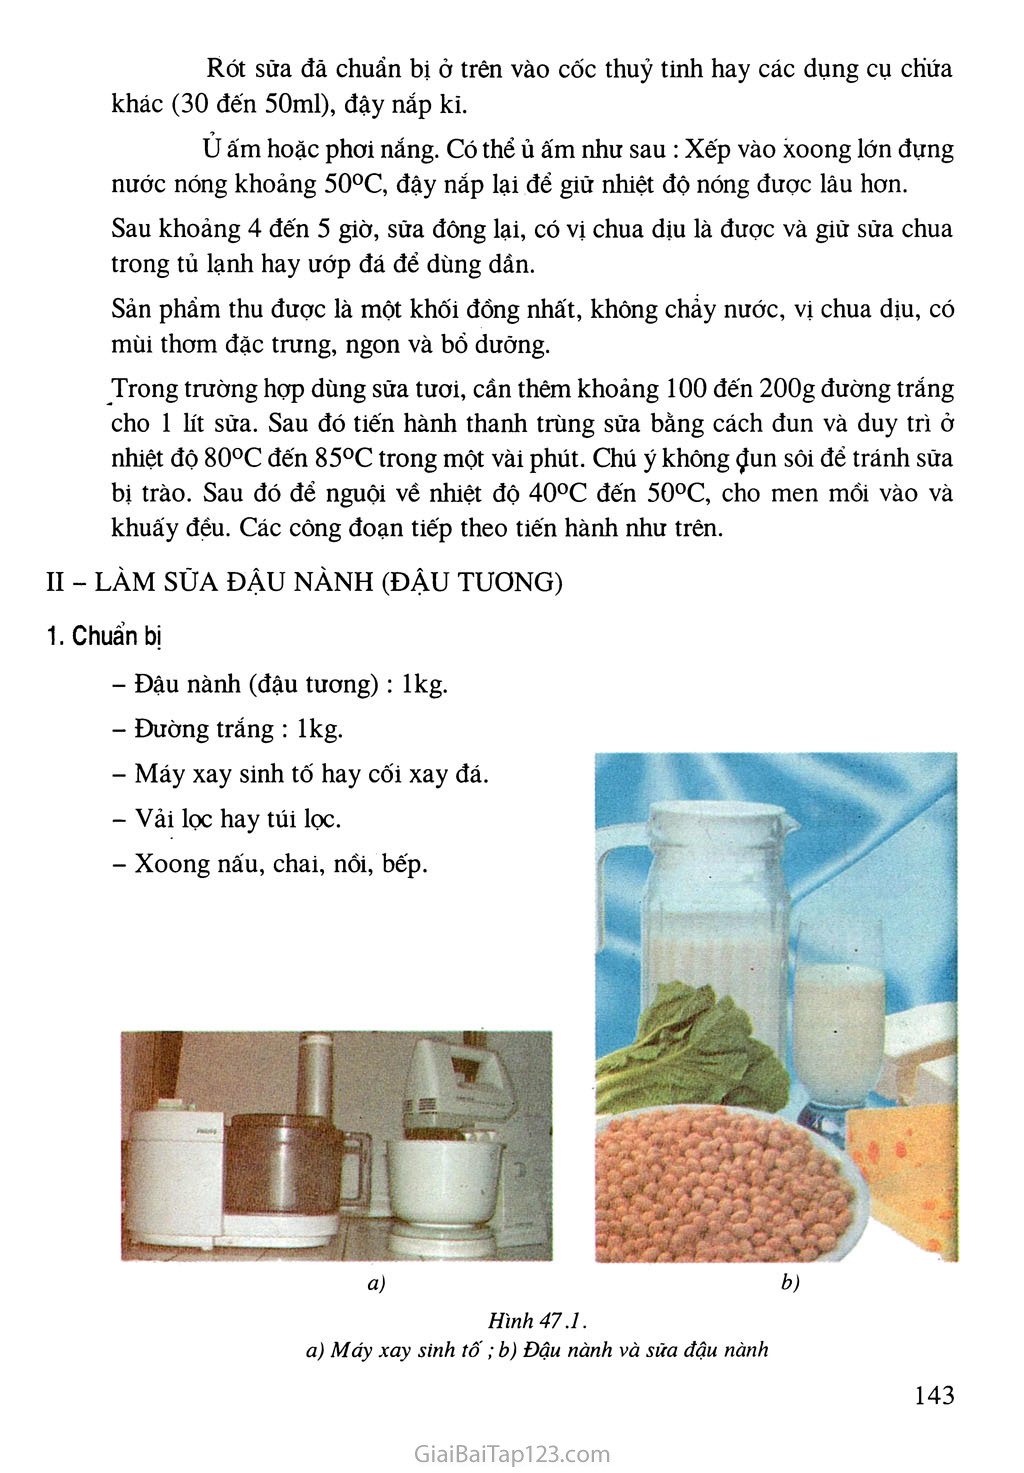 Bài 47. Thực hành: Làm sữa chua hoặc sữa đậu nành (đậu tương) bằng phương pháp đơn giản trang 2